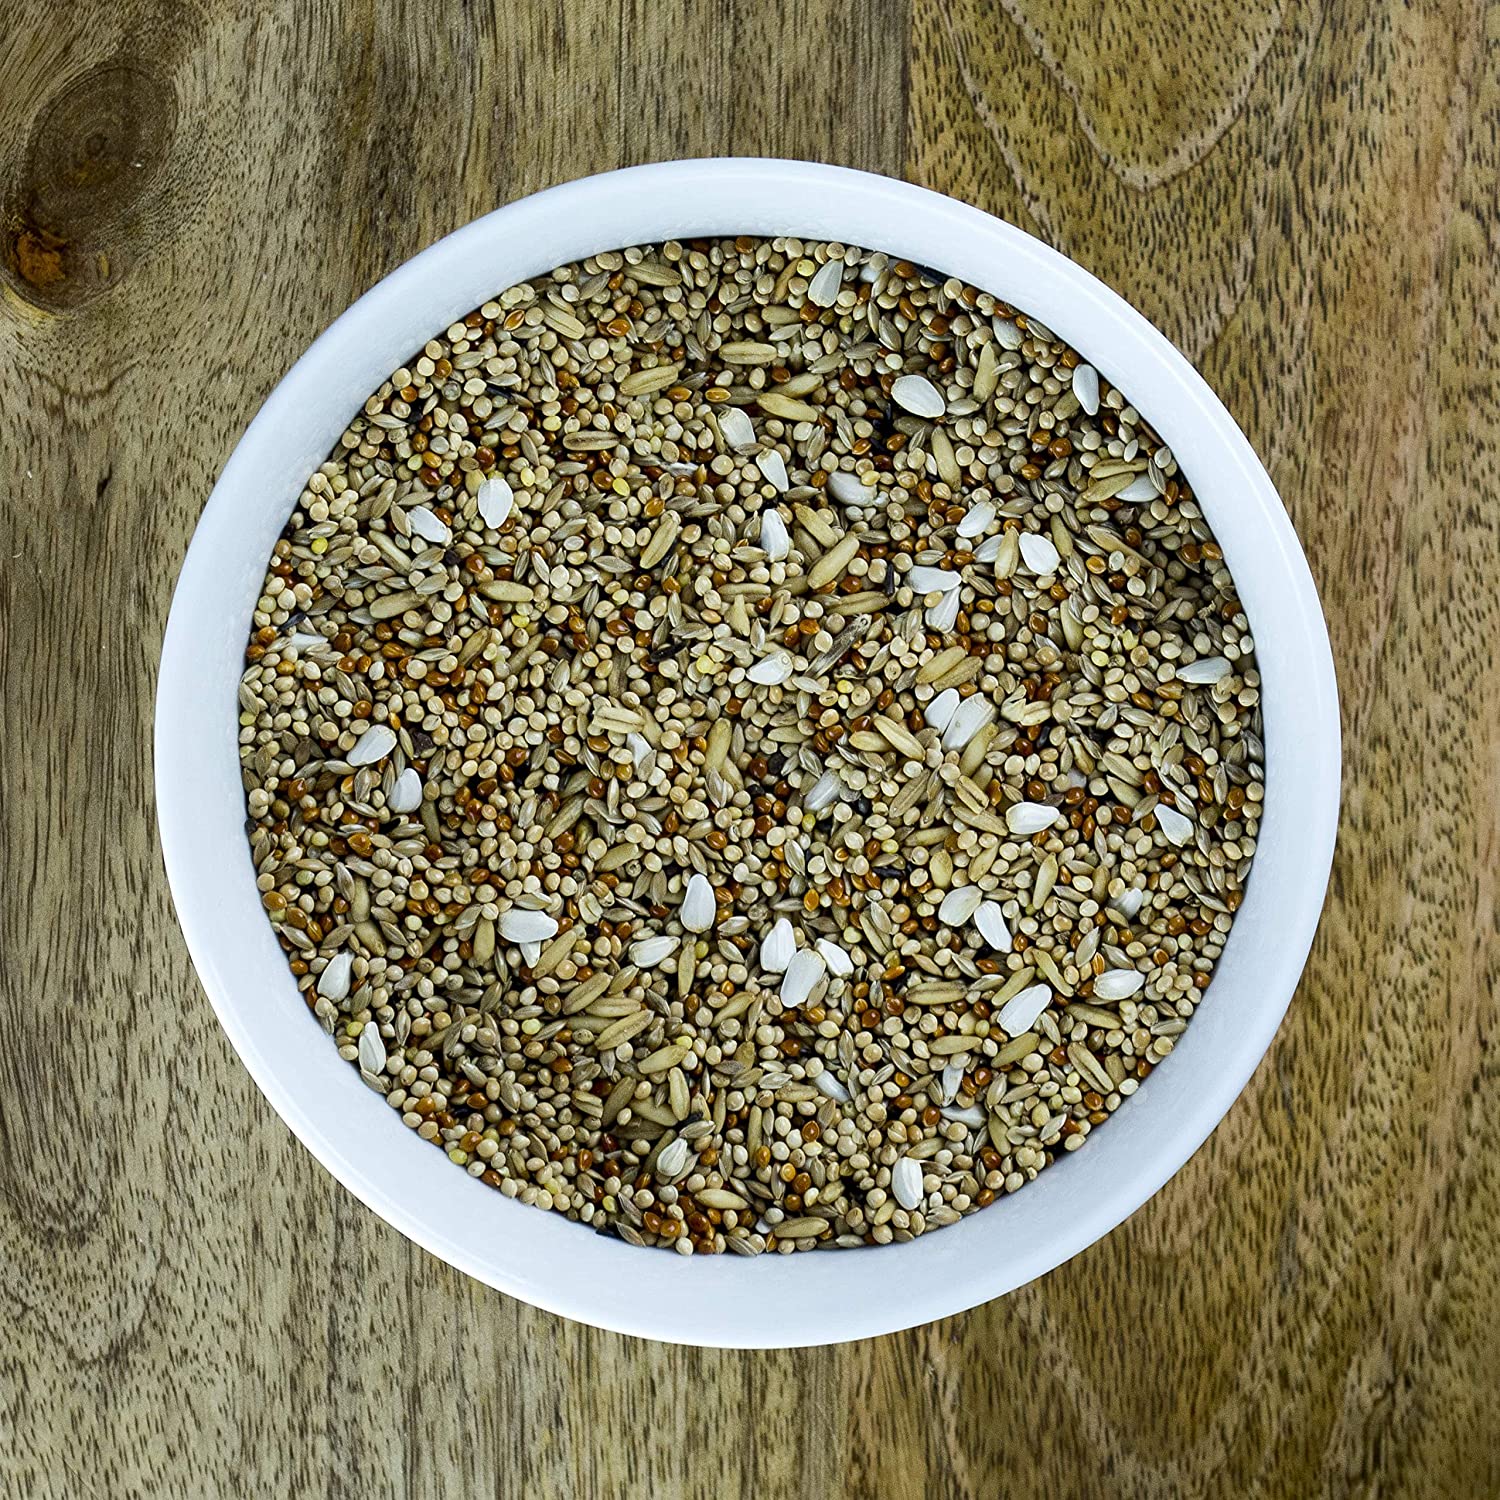  SeedzBox Mezcla Premium de semillas para periquitos. Comida para aves. Dieta equilibrada -alpiste, mijo blanco/ rojo, avena y negrillo, de alta calidad y saludable. Alto en proteína y fibra. Bolsa 1kg 